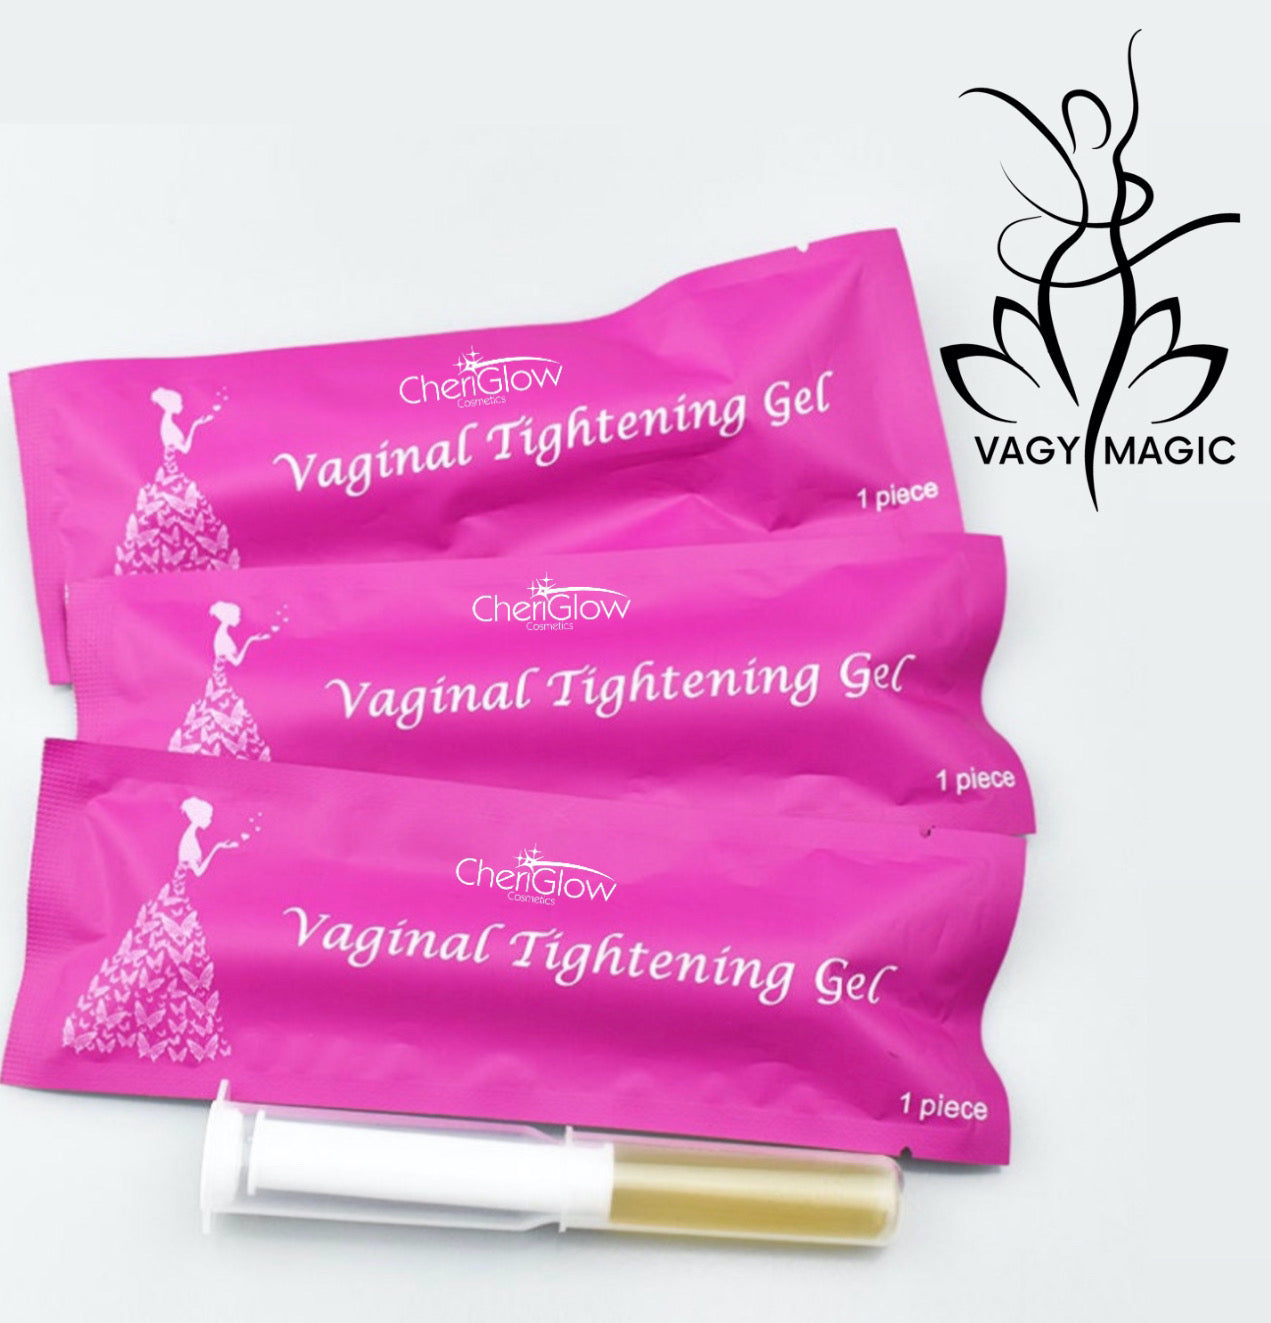 Vagy Magic - Vaginal Tightening Gel - 5 Pack